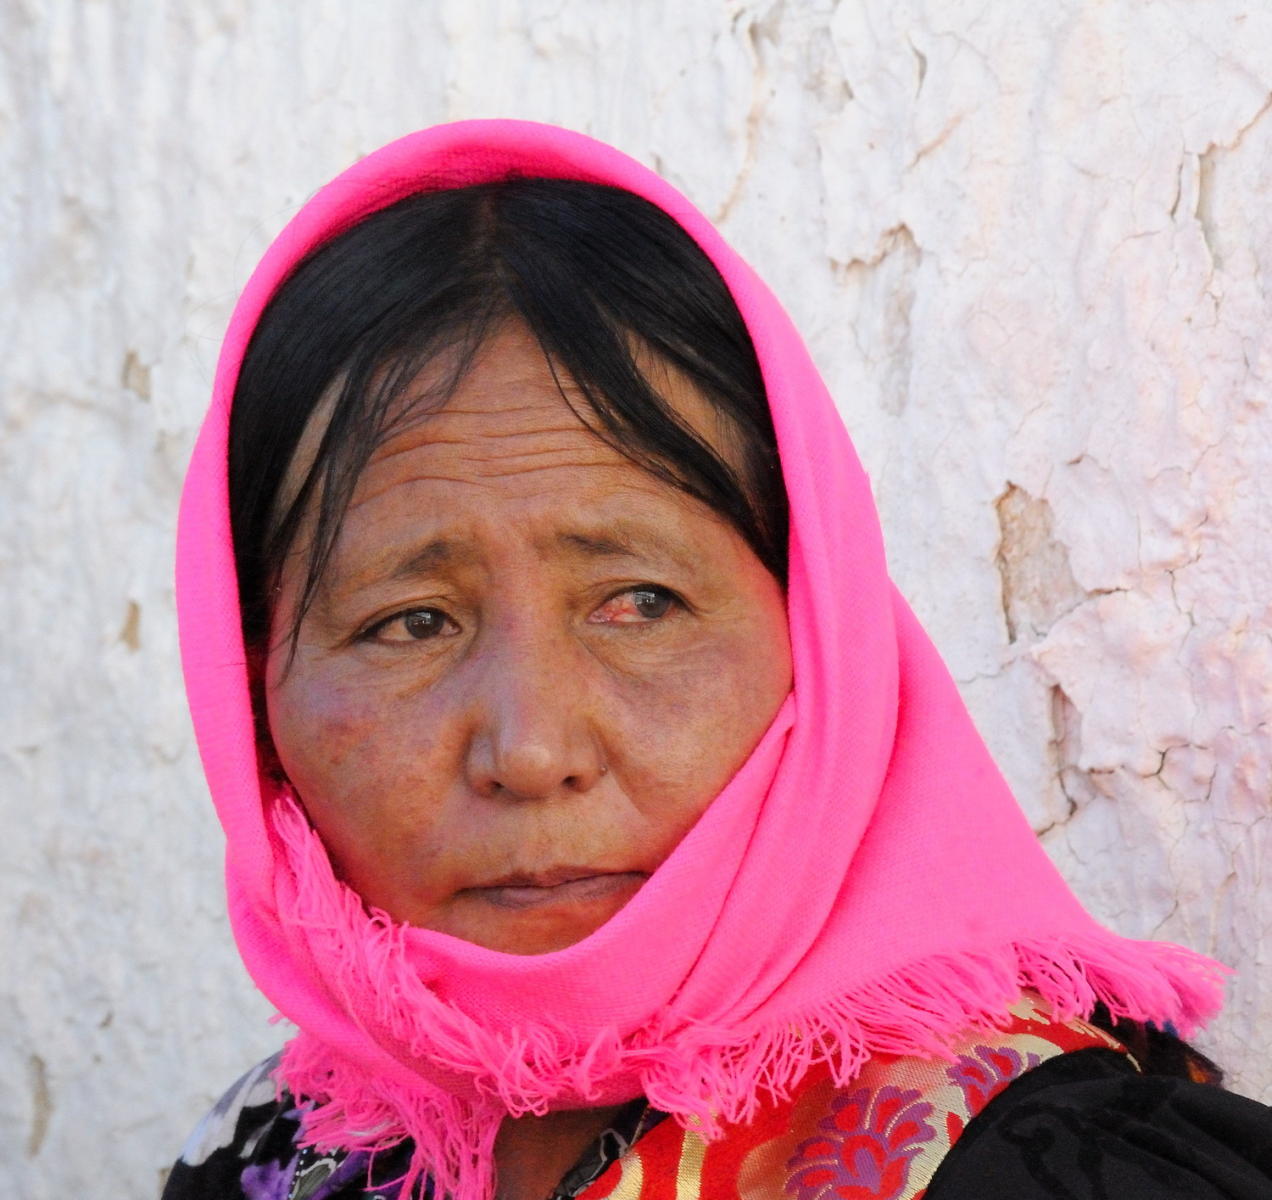 DSC_0085A - Tibetan Woman